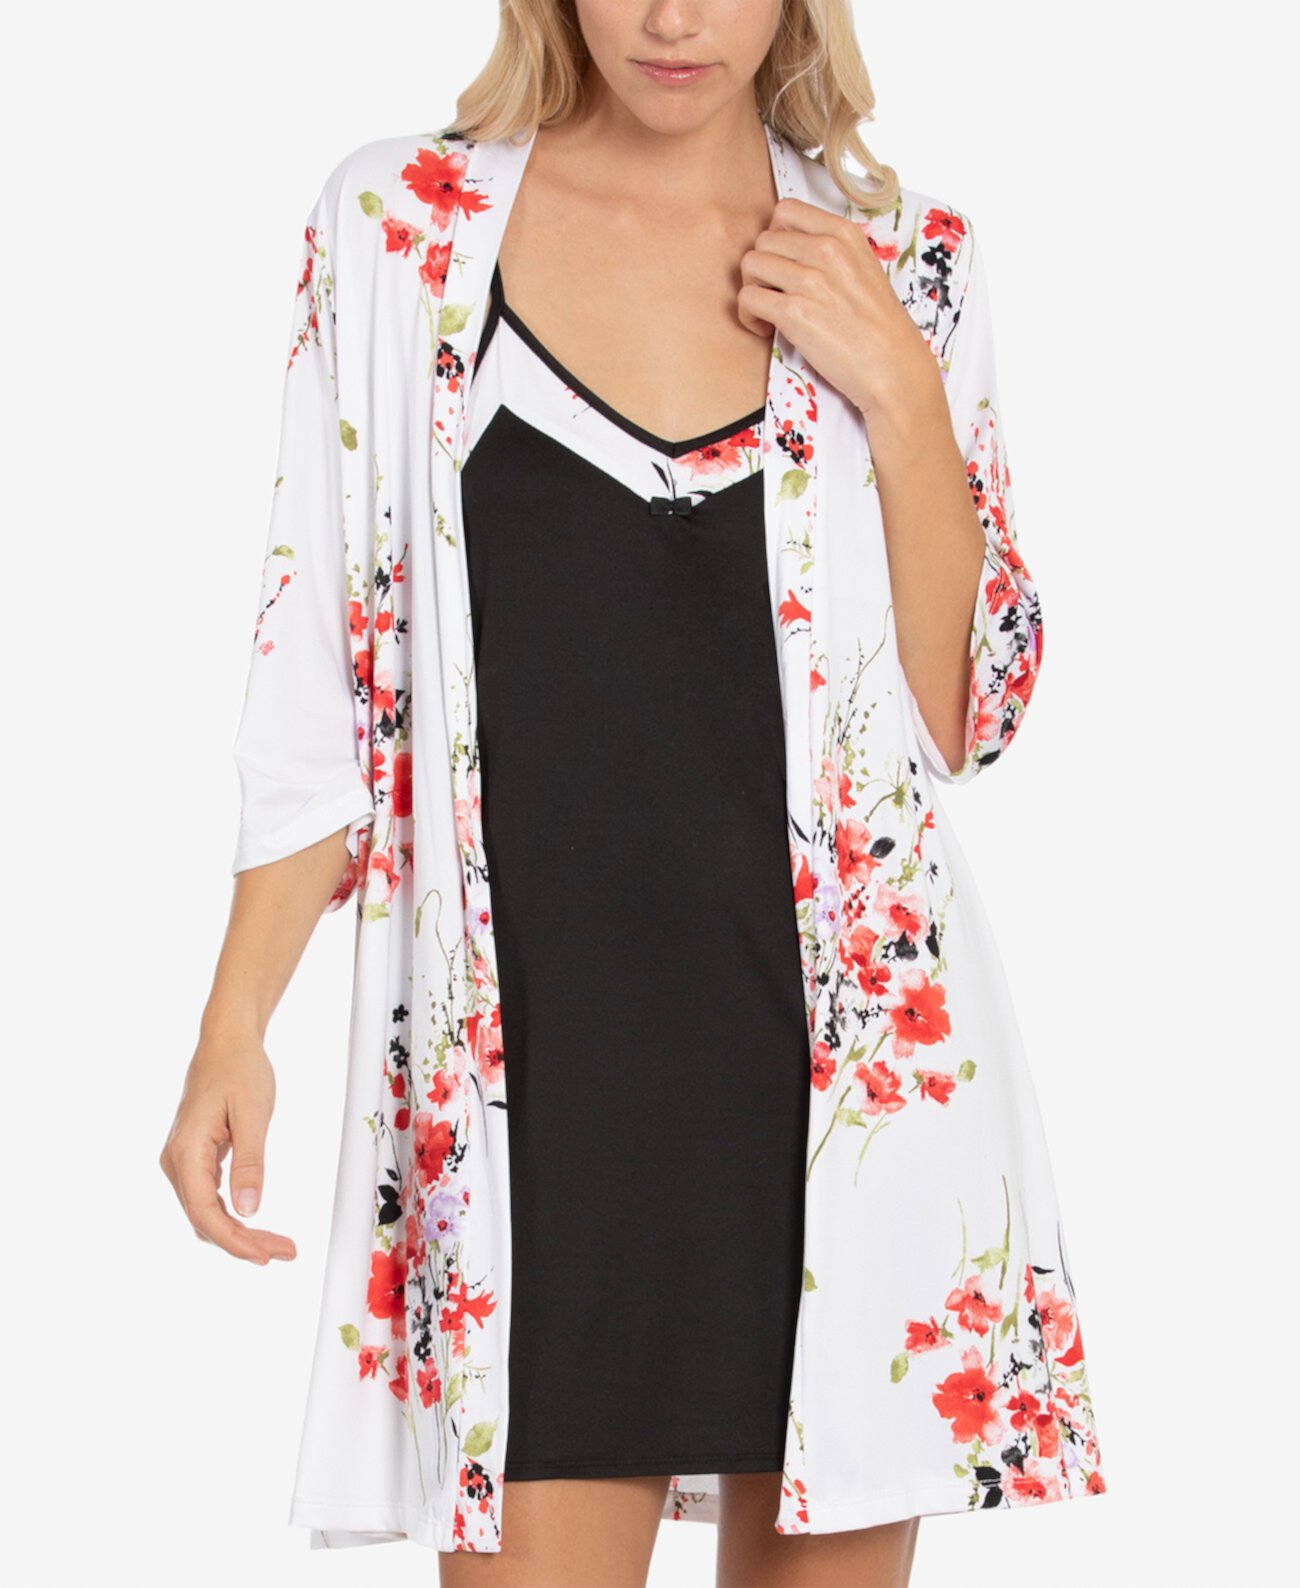 Сорочка с цветочным принтом, ночная рубашка и халат с запахом Linea Donatella